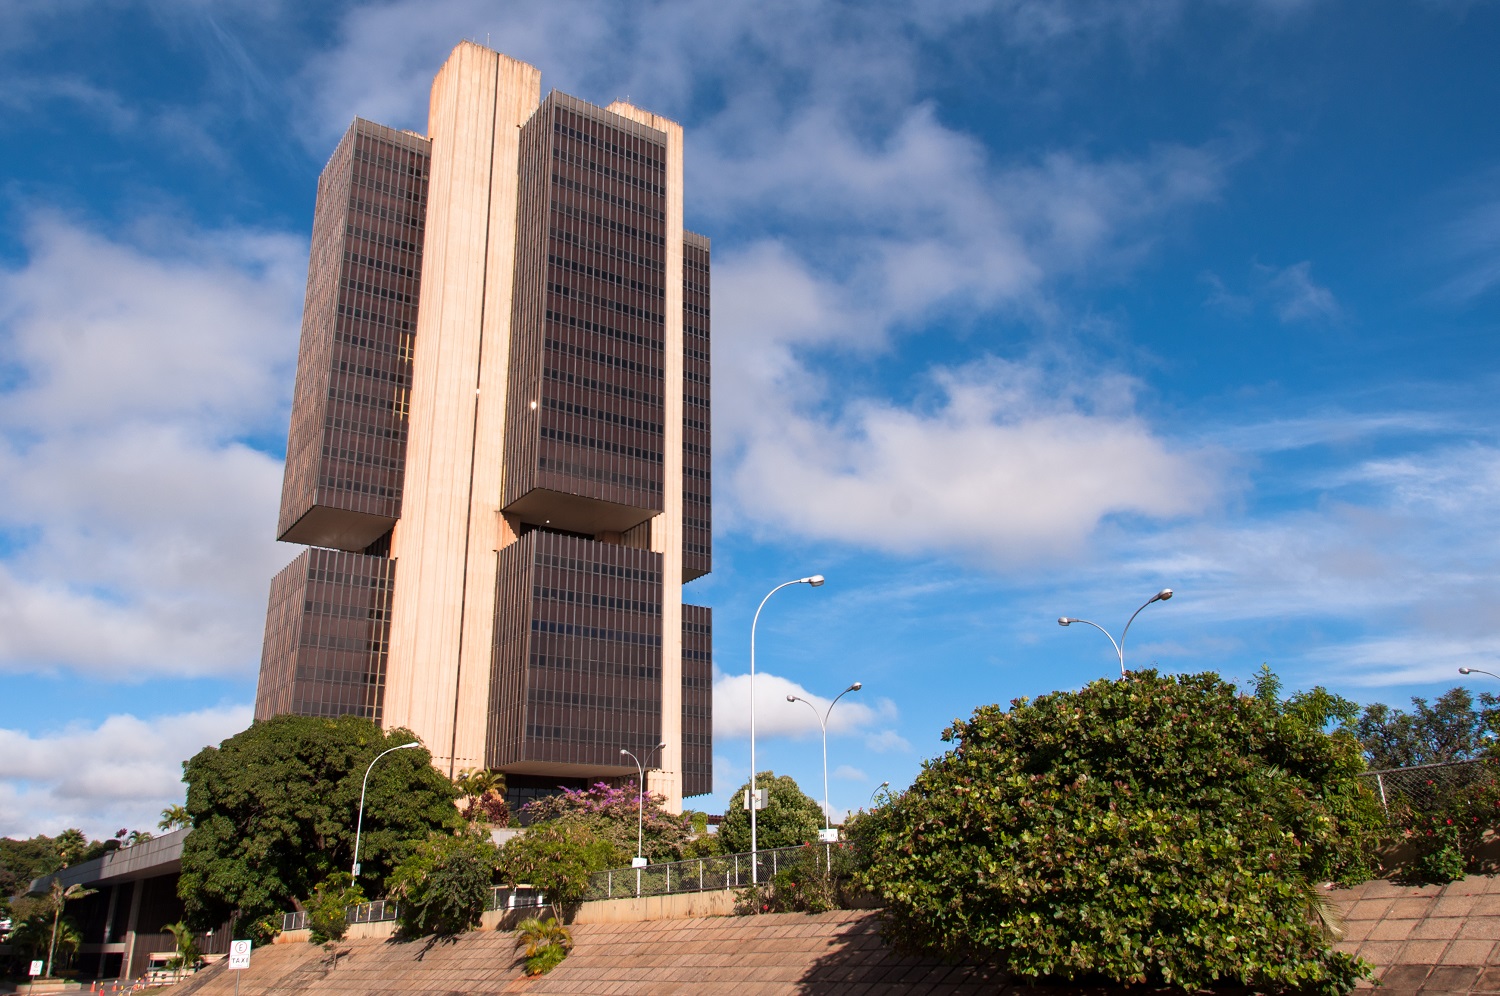 The Central Bank of Brazil building in Brasilia, Brazil.